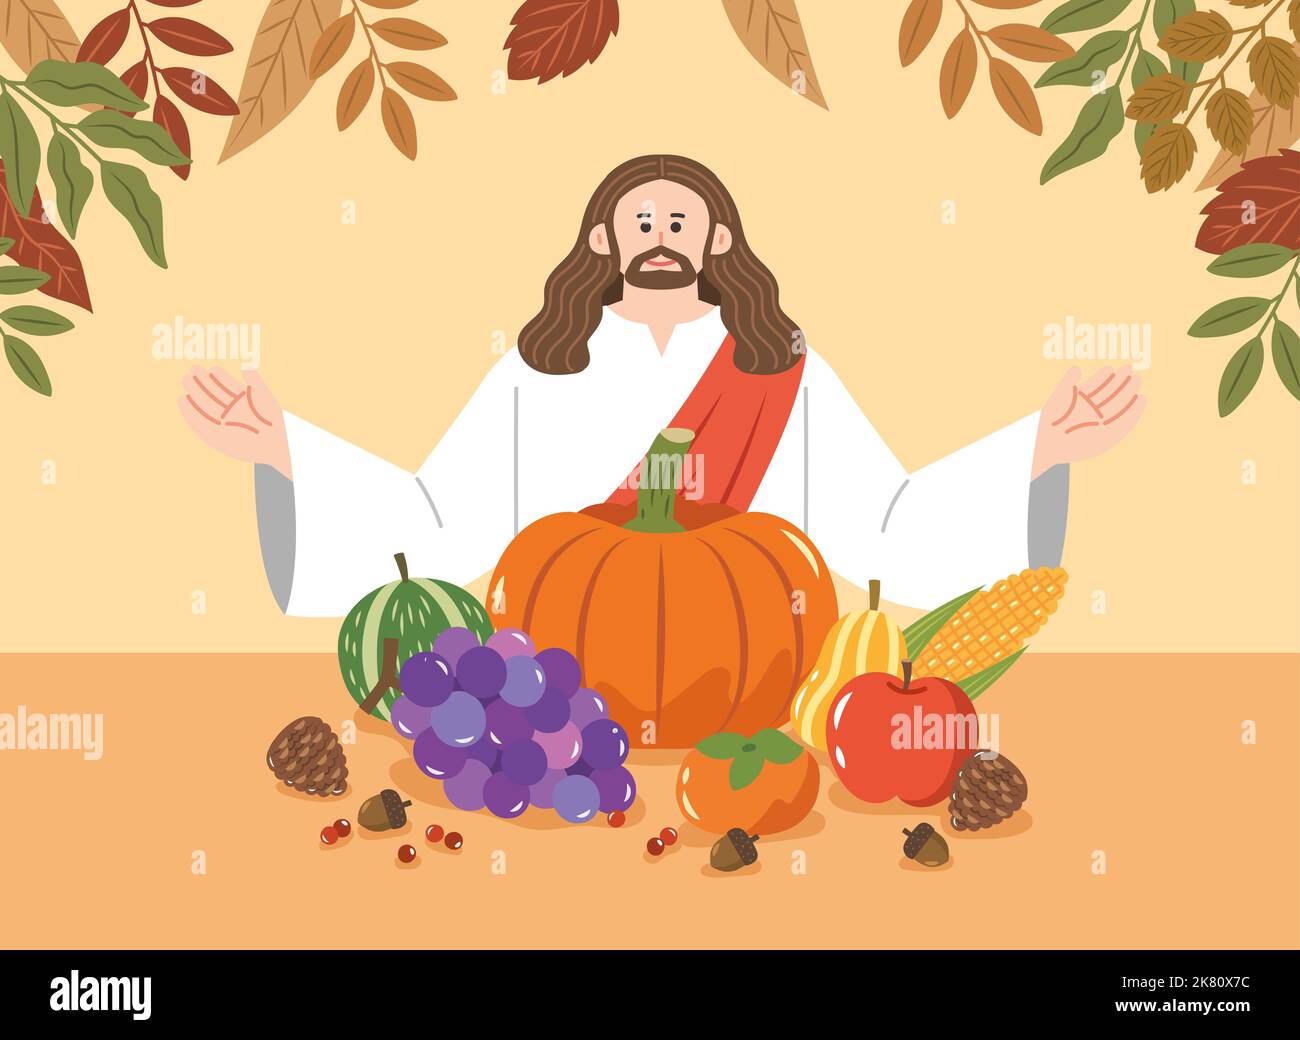 Le jour de Thanksgiving, les jours fériés et les événements d'octobre Banque D'Images